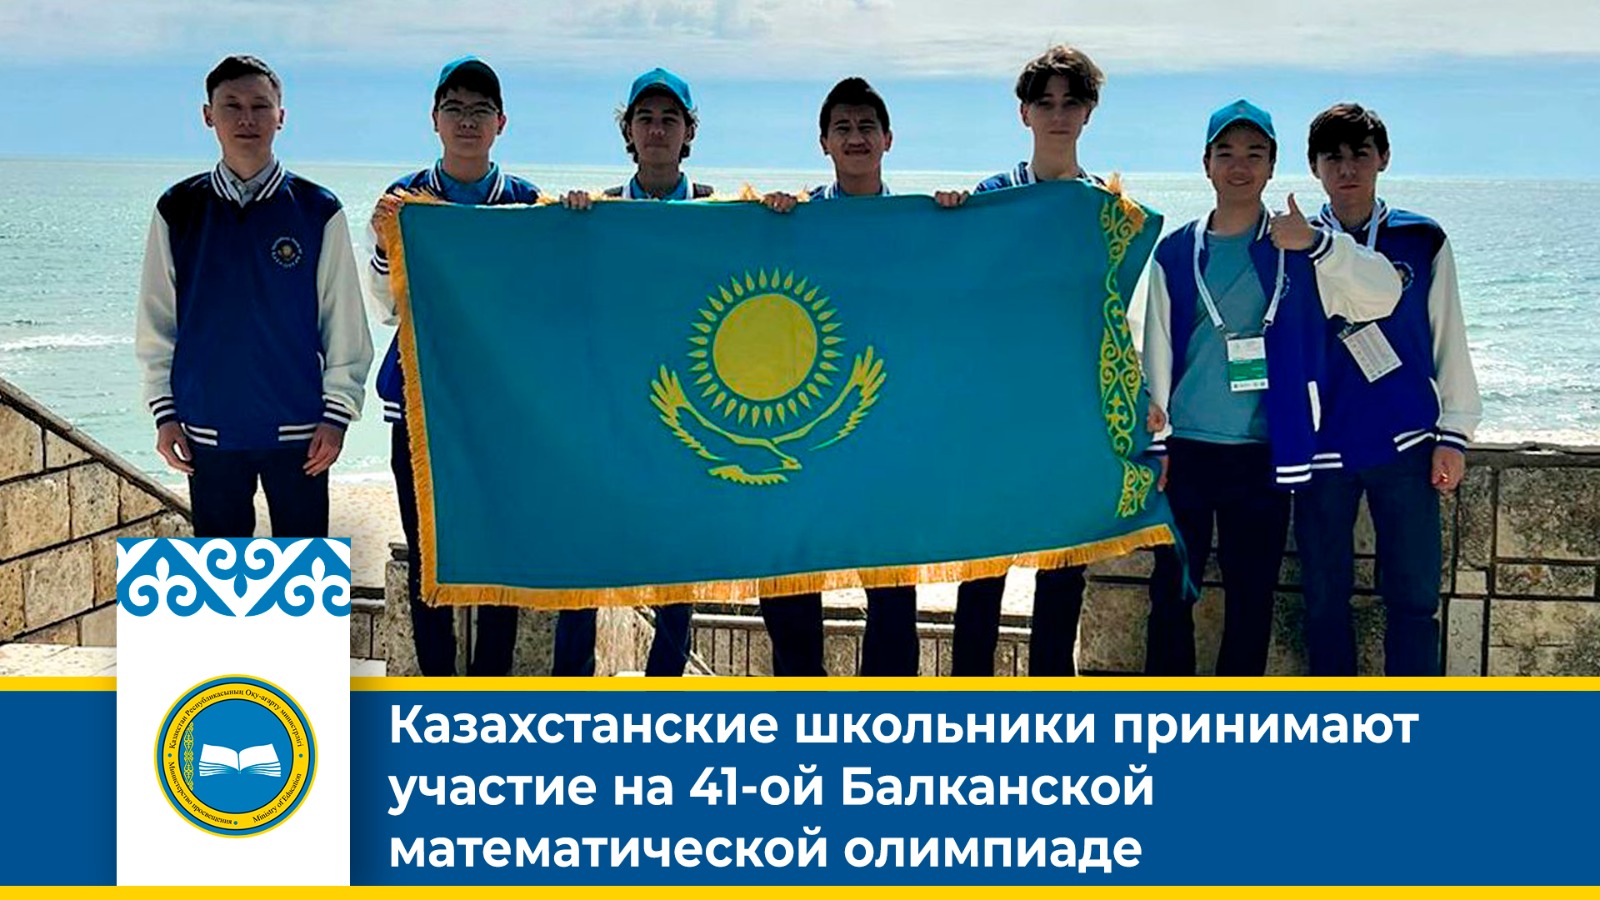 Казахстанские школьники принимают участие на 41-ой Балканской математической олимпиаде